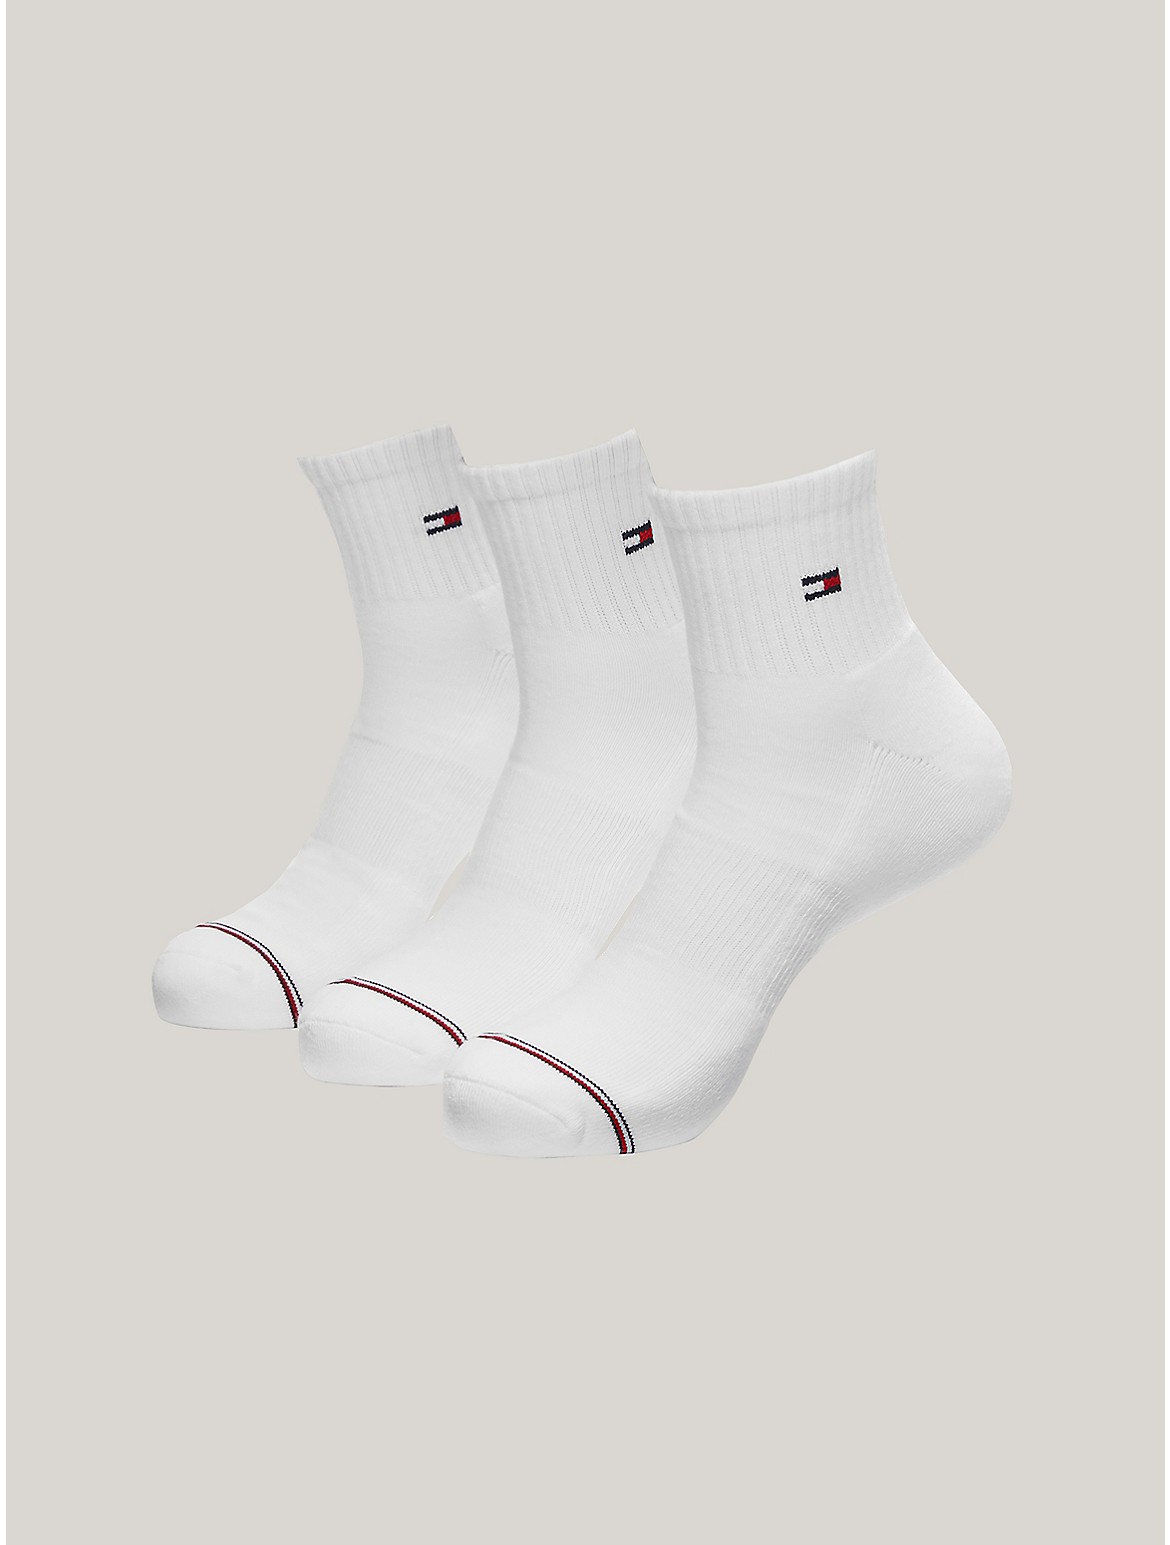 Tommy Hilfiger Men's Quarter Top Socks 3-Pack - White